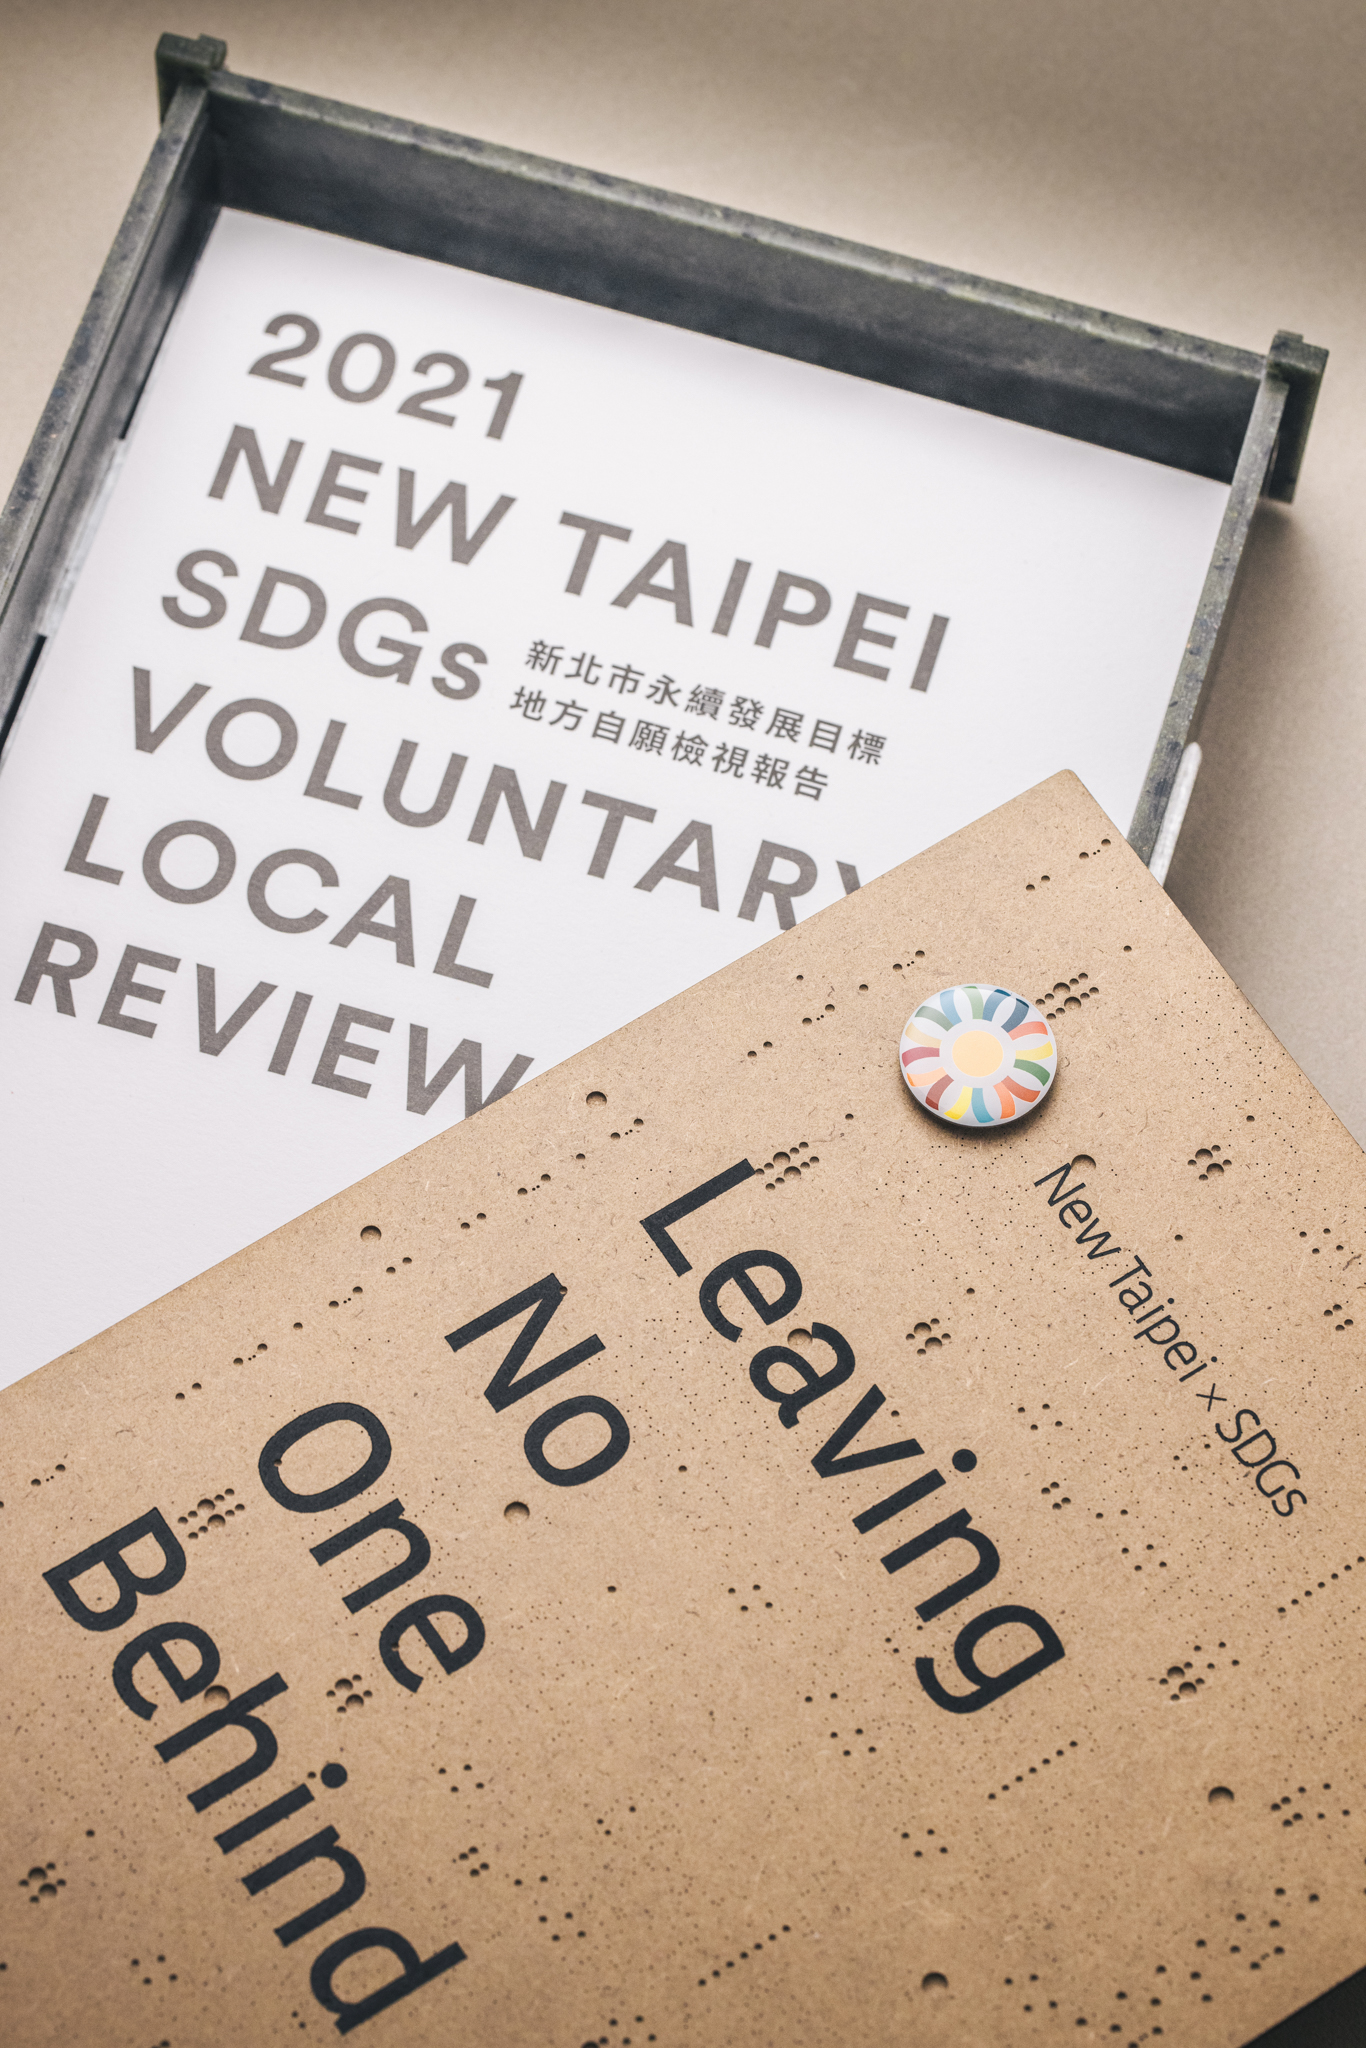 2021 New Taipei SDGs Voluntary Local Review